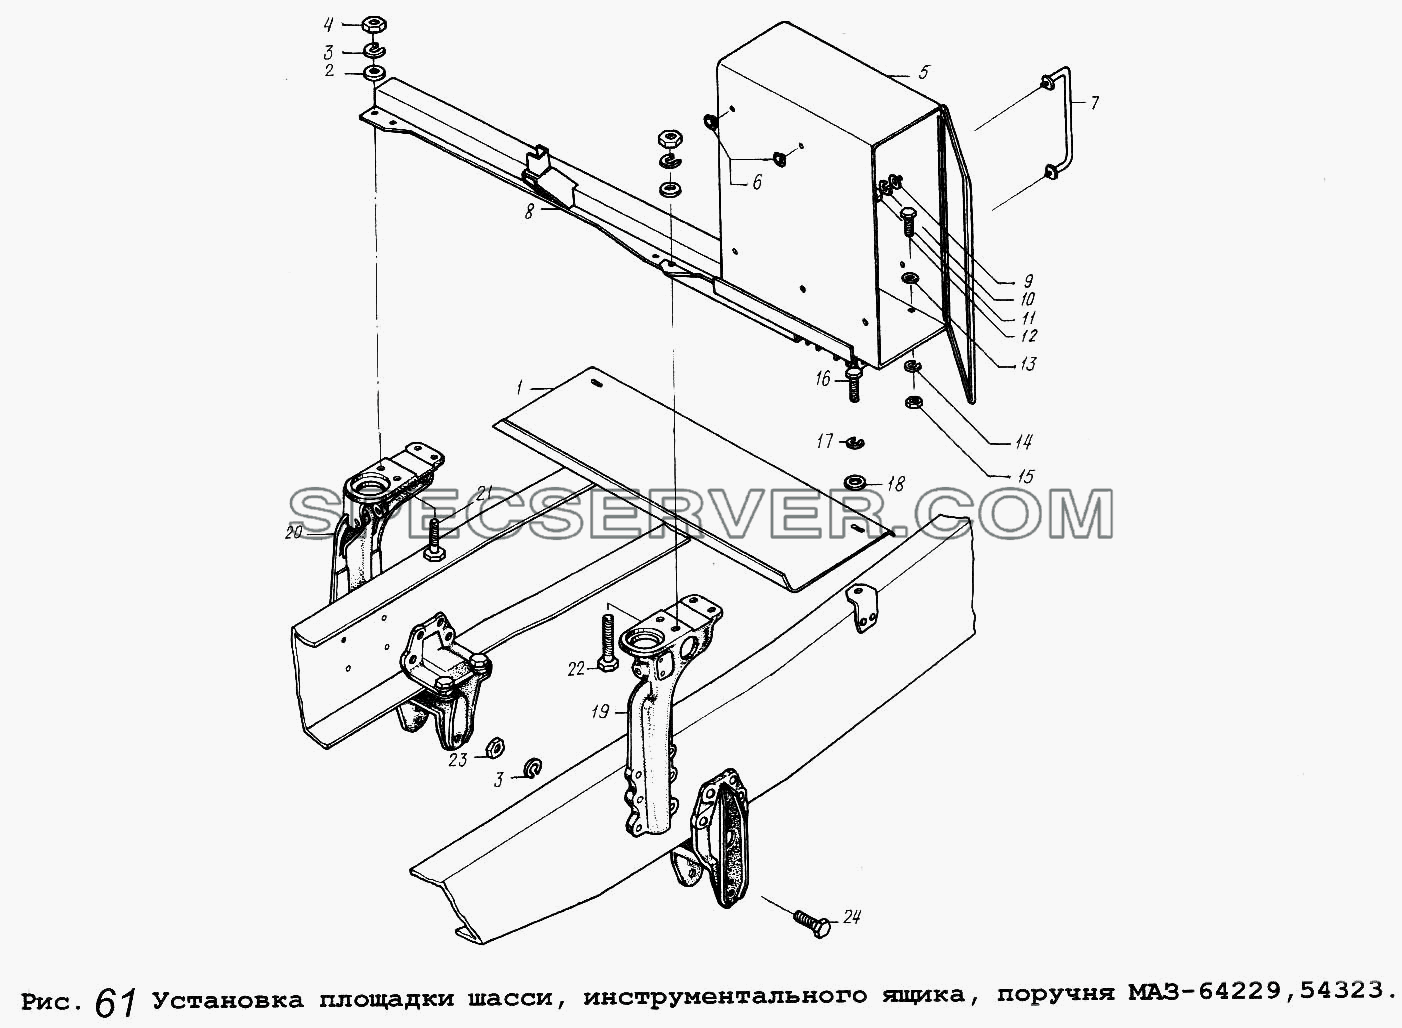 Установка площадки шасси, инструментального ящика, поручня МАЗ-64229,54323 для МАЗ-54323 (список запасных частей)